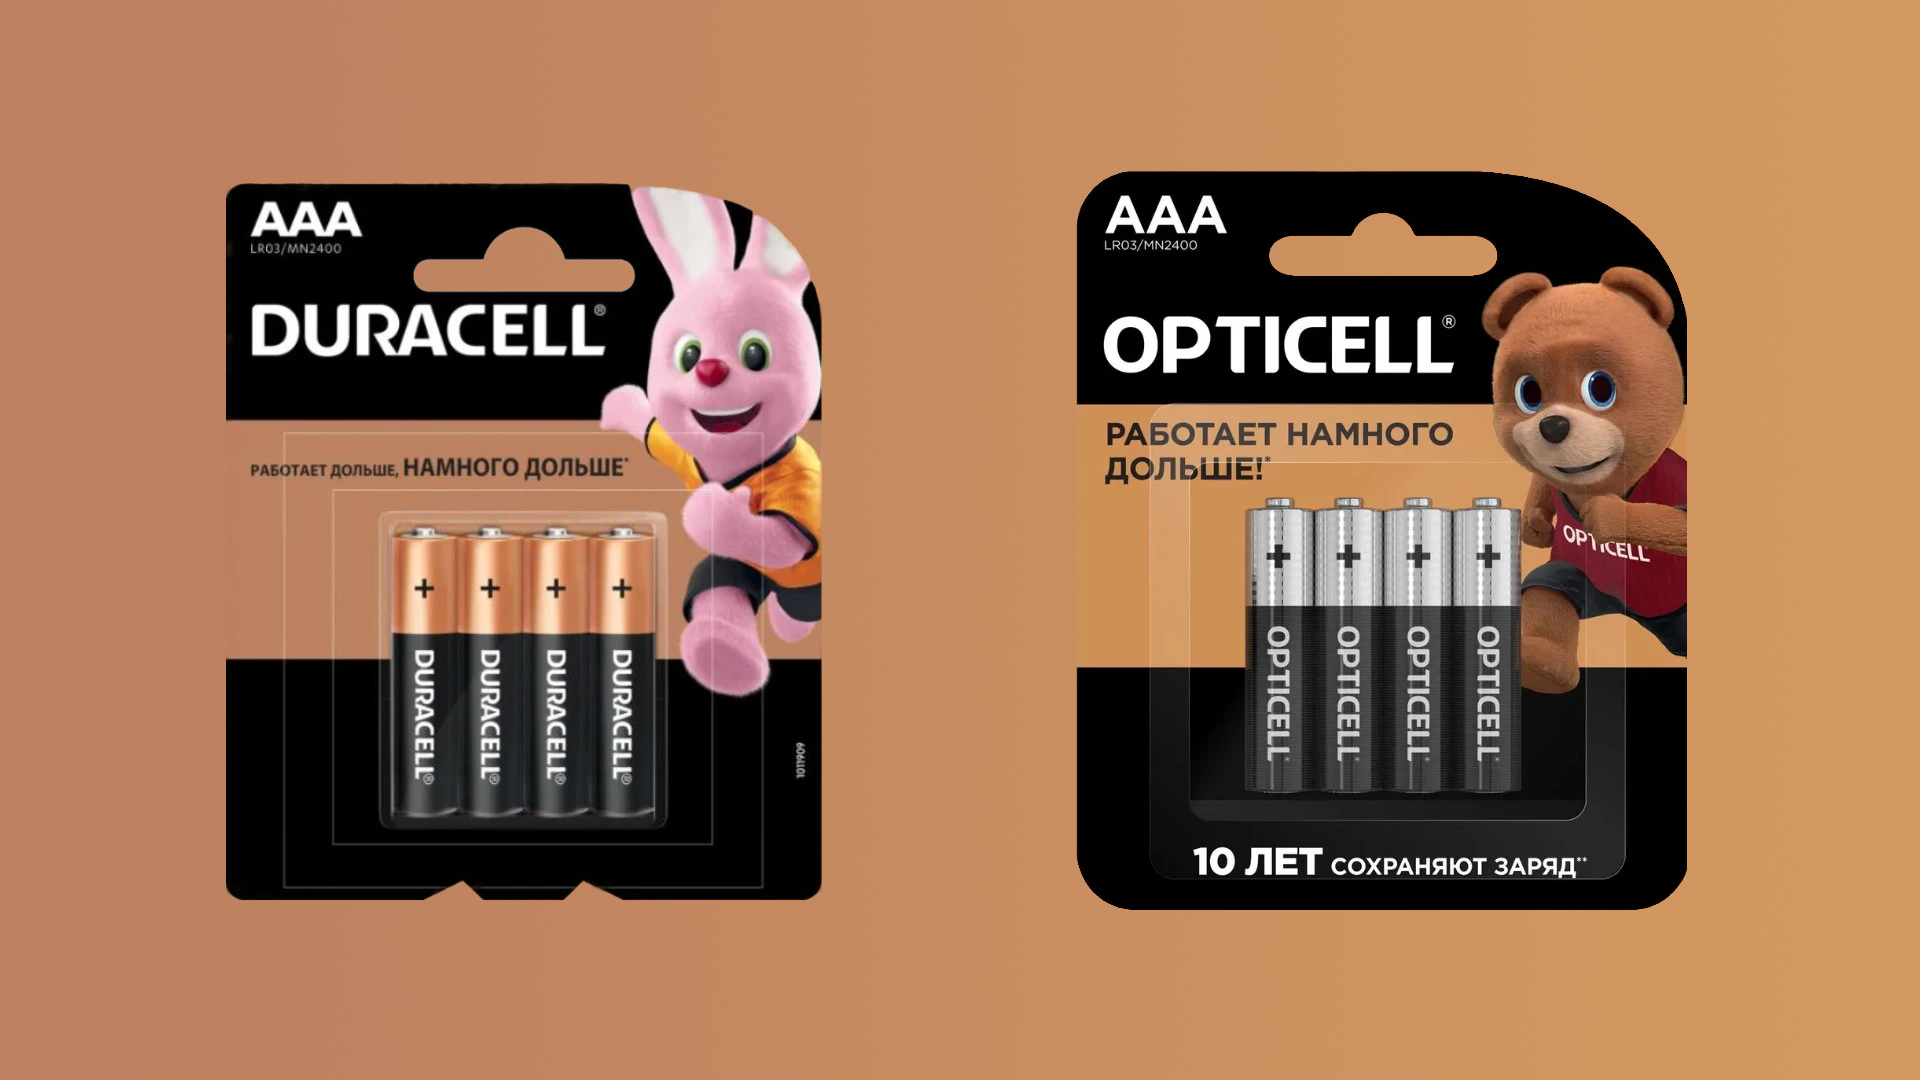 Duracell переименовалась в Opticell и продолжила продавать батарейки в России